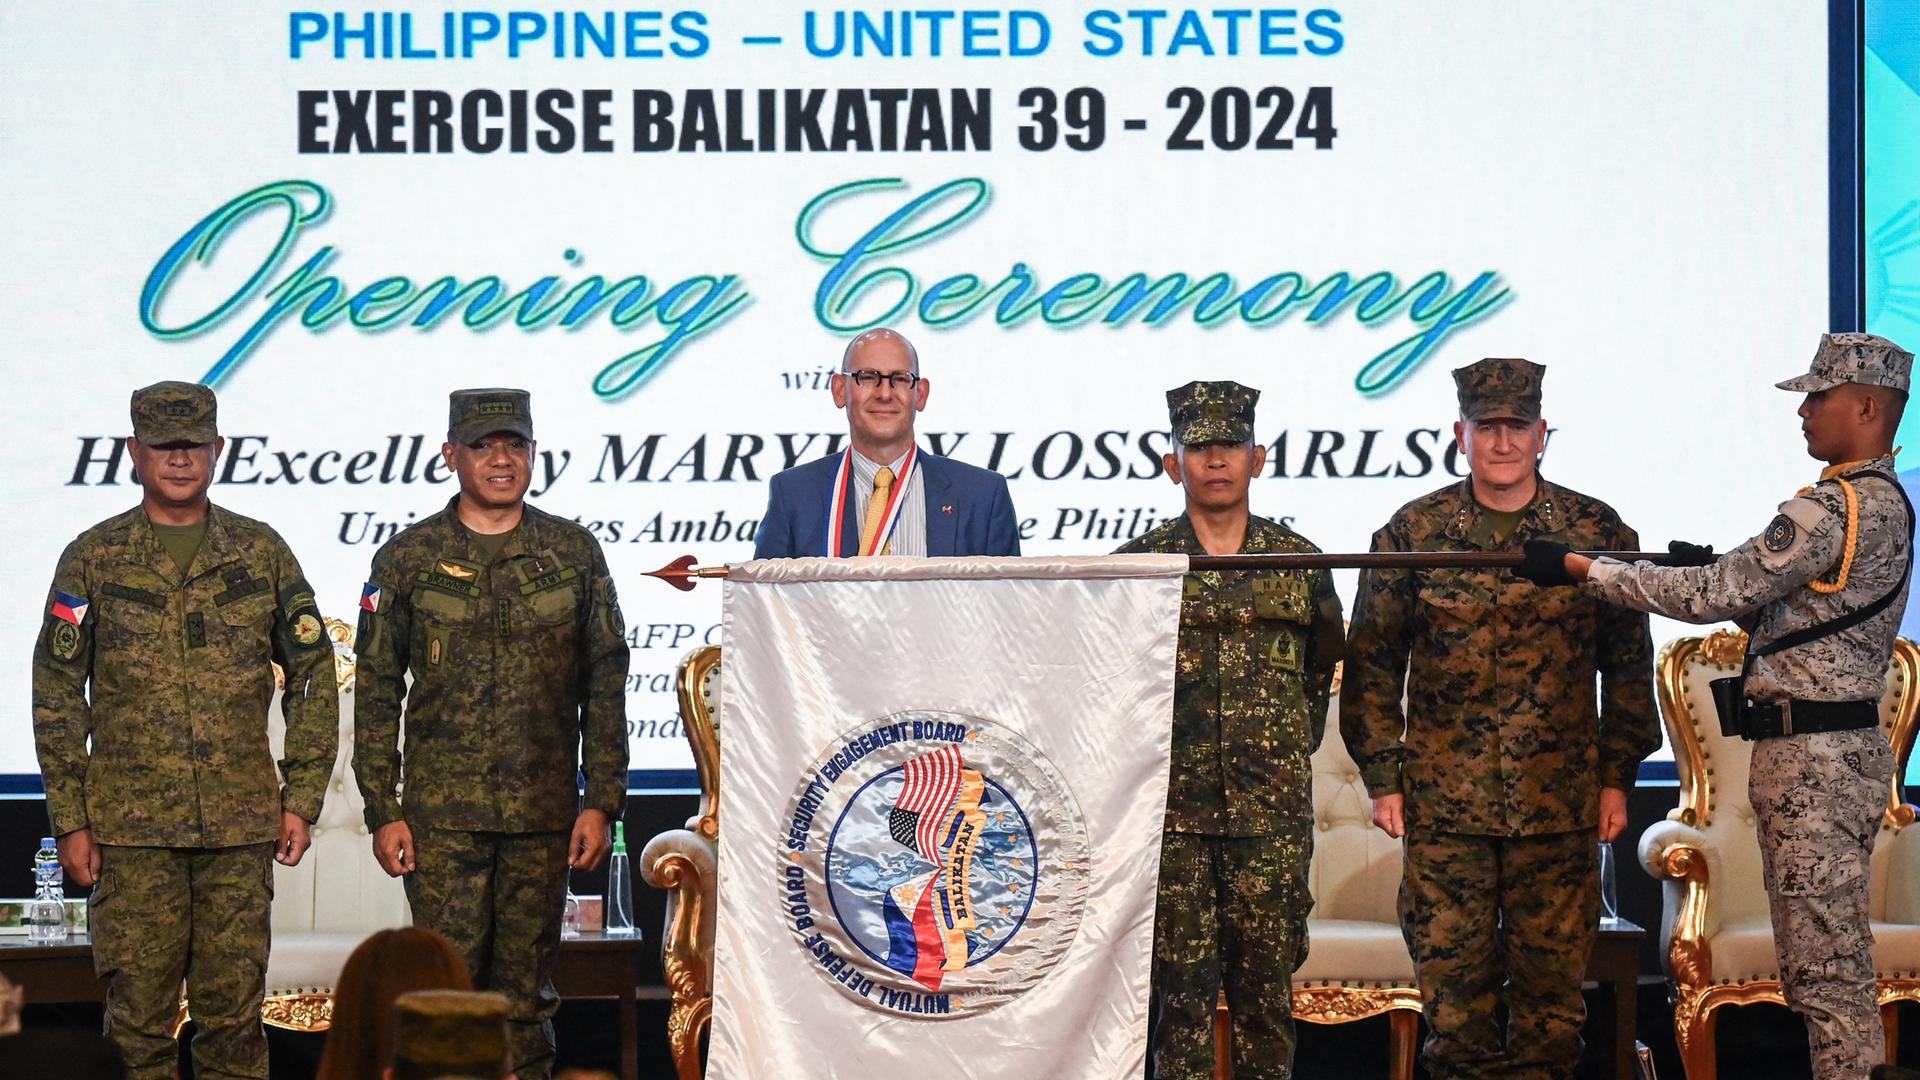 Philippinische und amerikanische Militärs stehen bei der Eröffnungszeremonie des Militärmanövers Exercise Balikatan 39 - 2024 nebeneinander. Ein Soldat hält eine Fahne mit den Flaggen beider Länder waagerecht vor den Militärs.